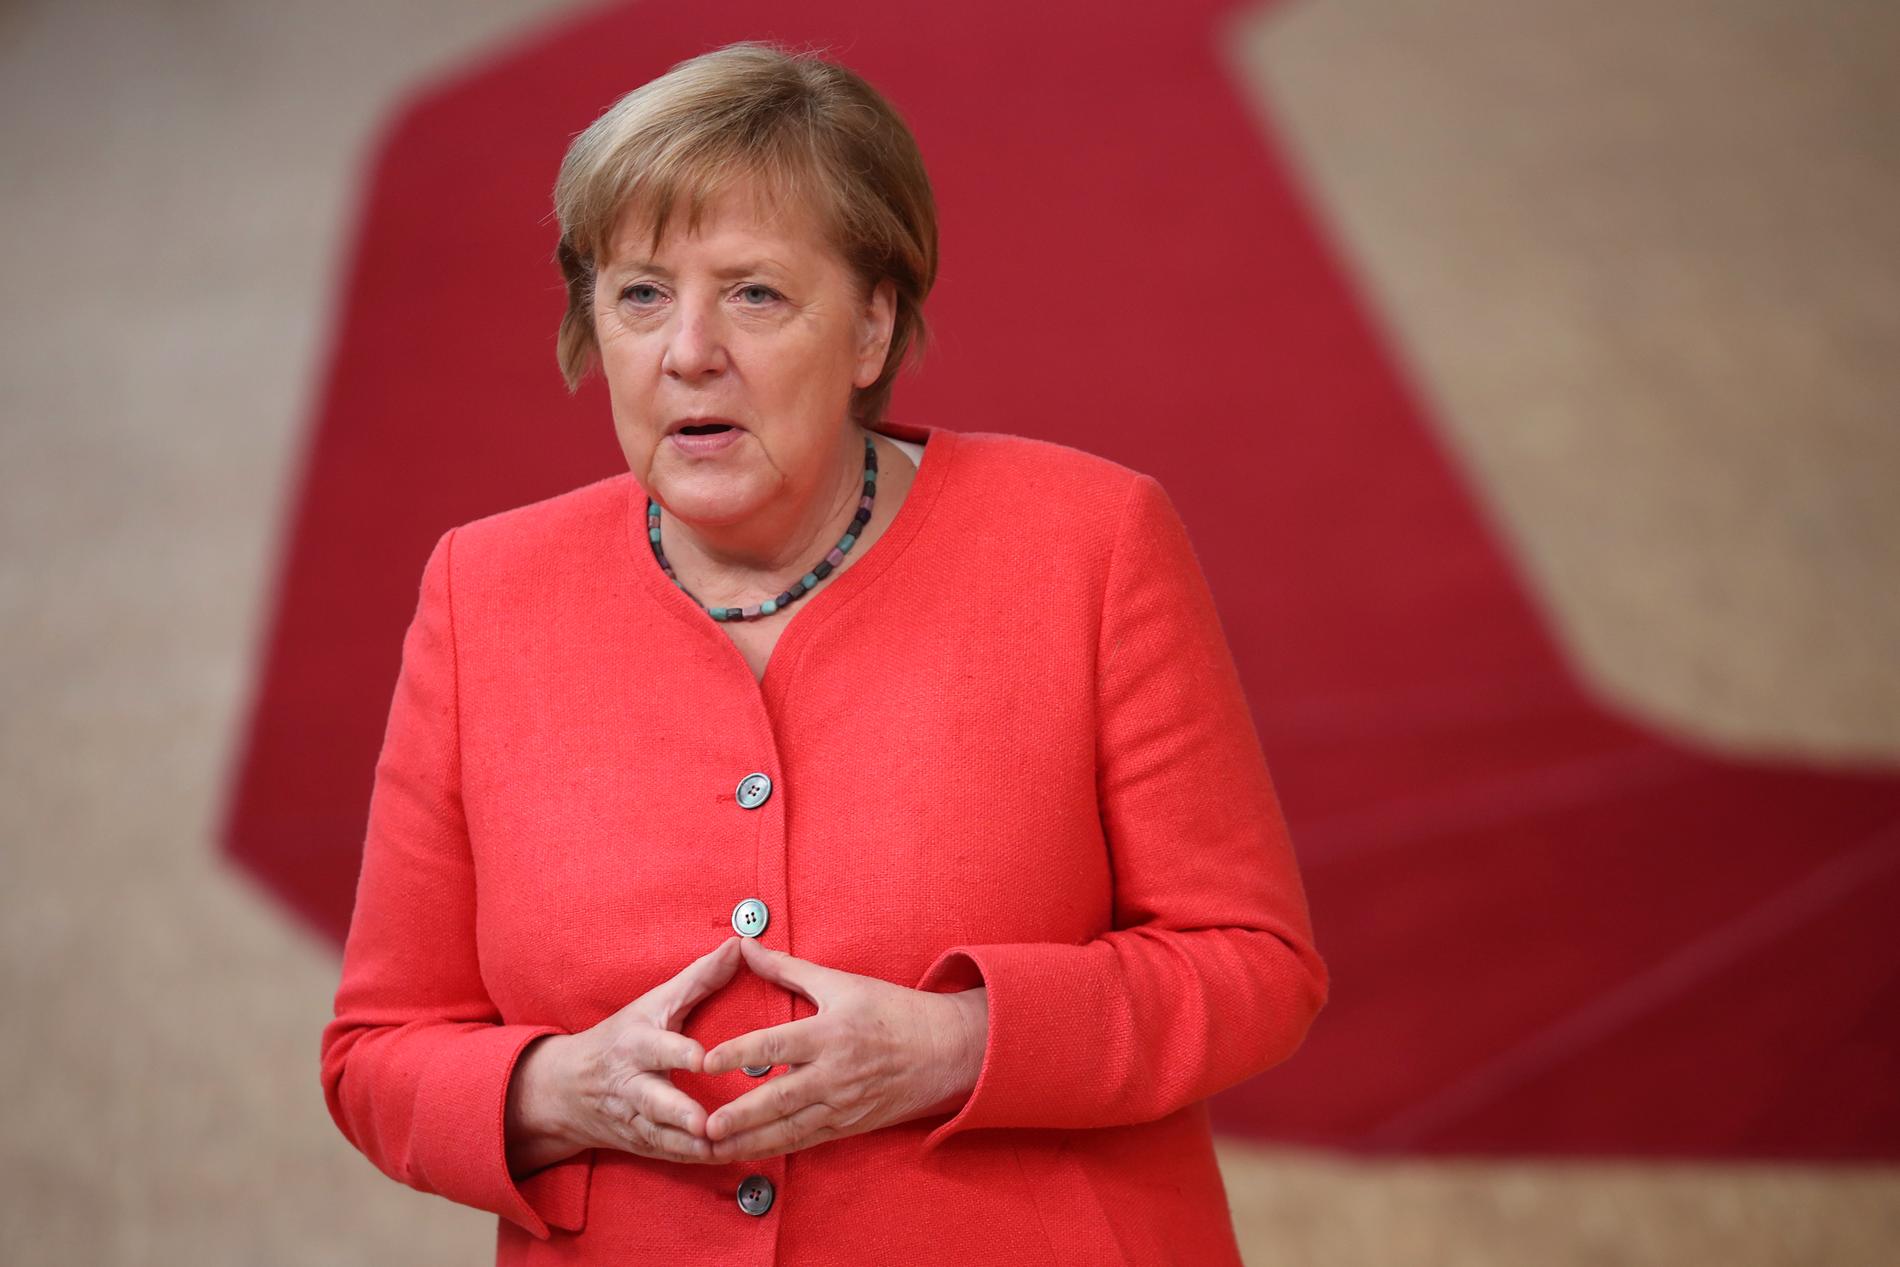 Klassisk Merkelpose med händerna, i Tyskland kallad "Merkel-Raute".